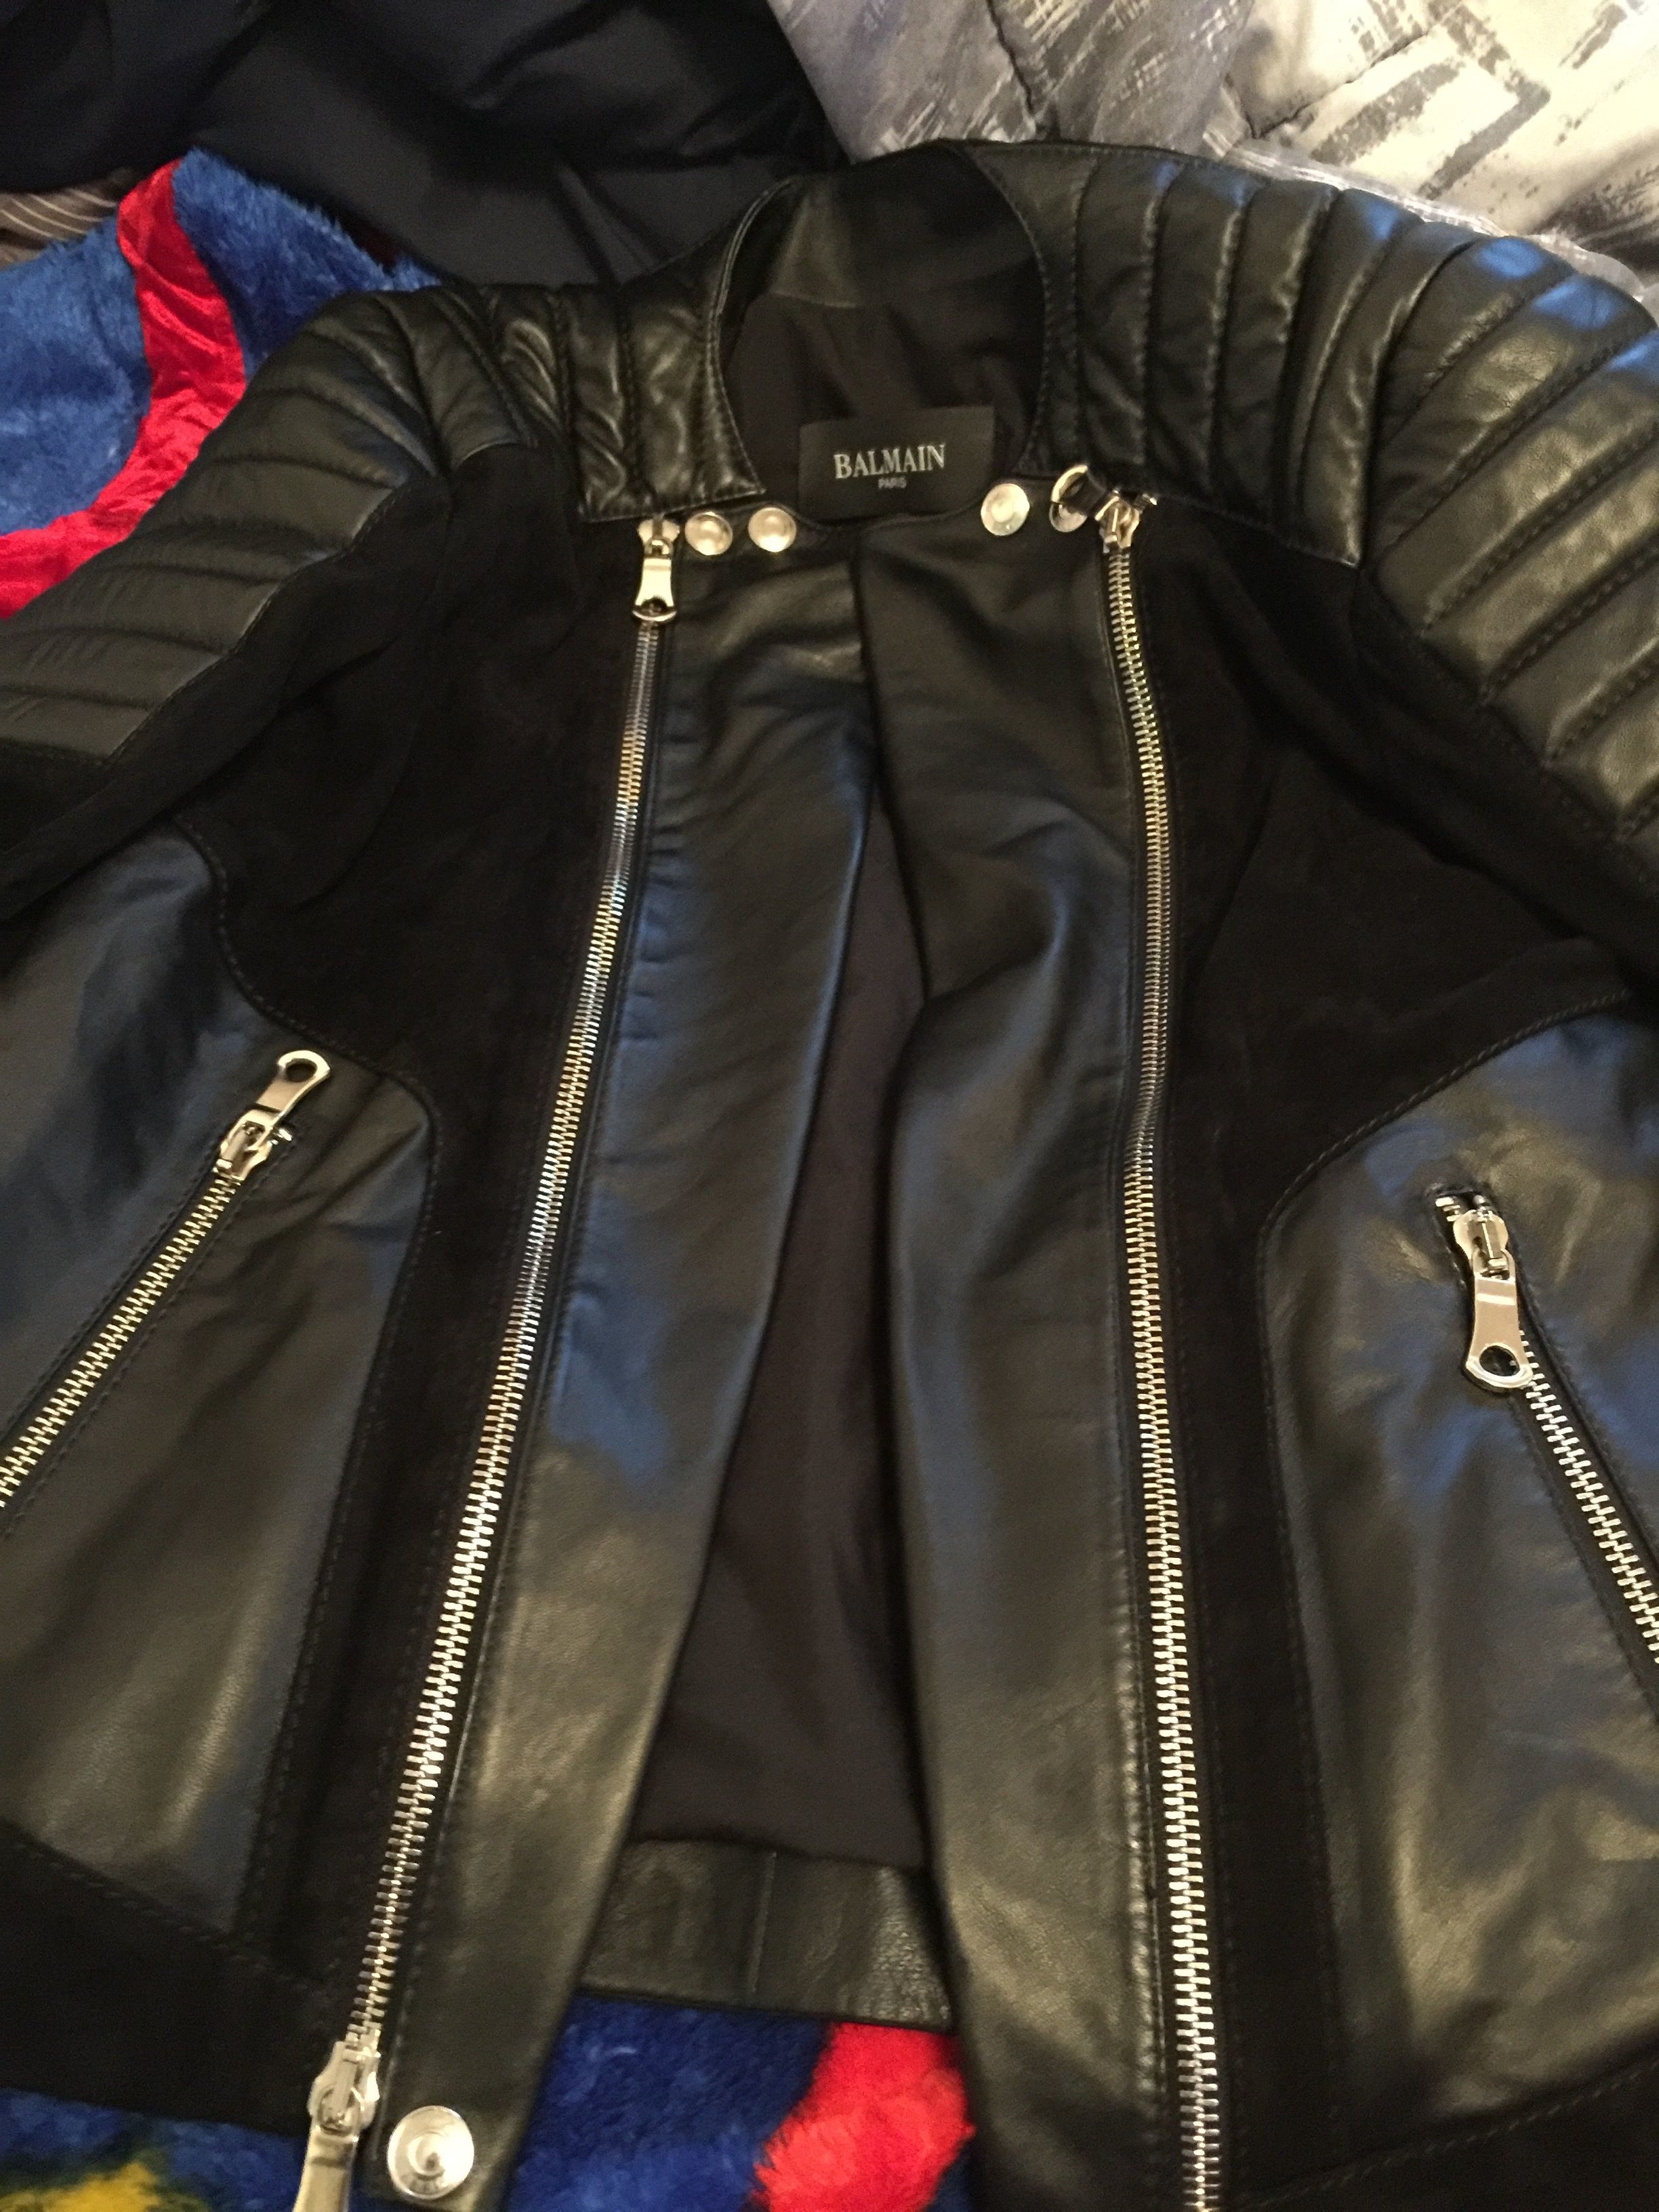 real or fake balmain jacket | Styleforum